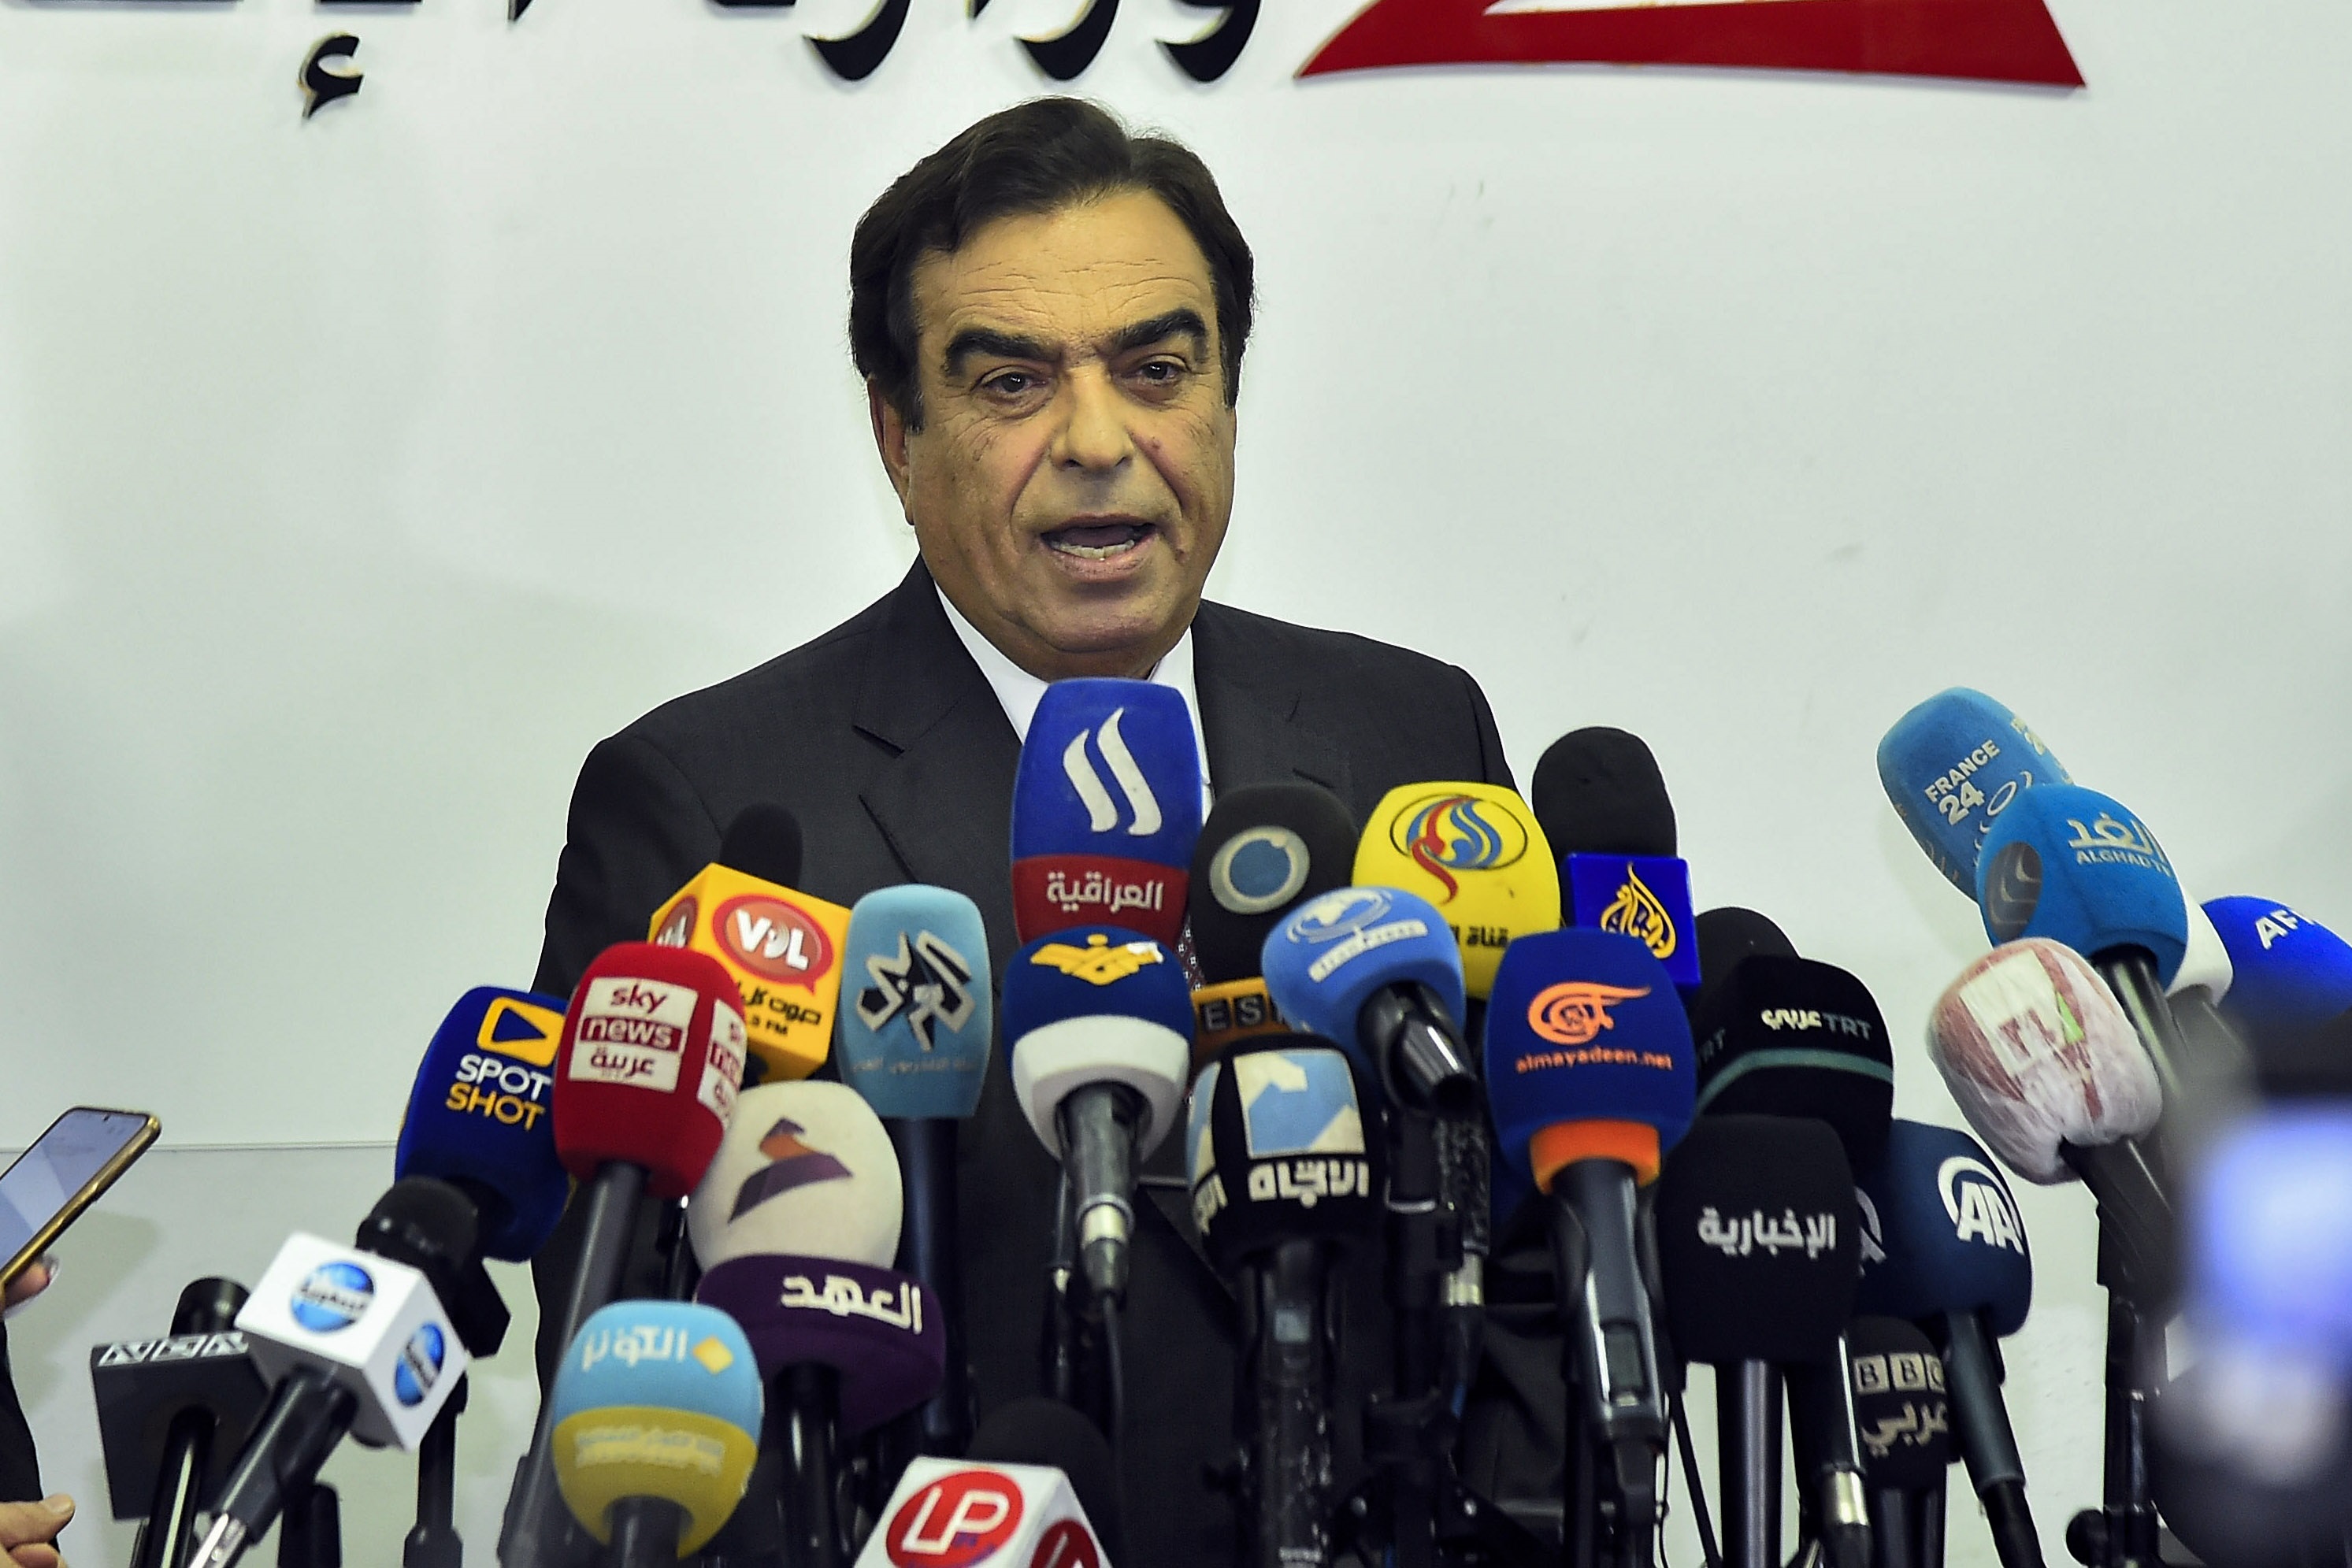 وزير الإعلام جورج قرداحي في المؤتمر الصحفي الذي أعلن فيه استقالته من الحكومة اللبنانية ( د ب ا)